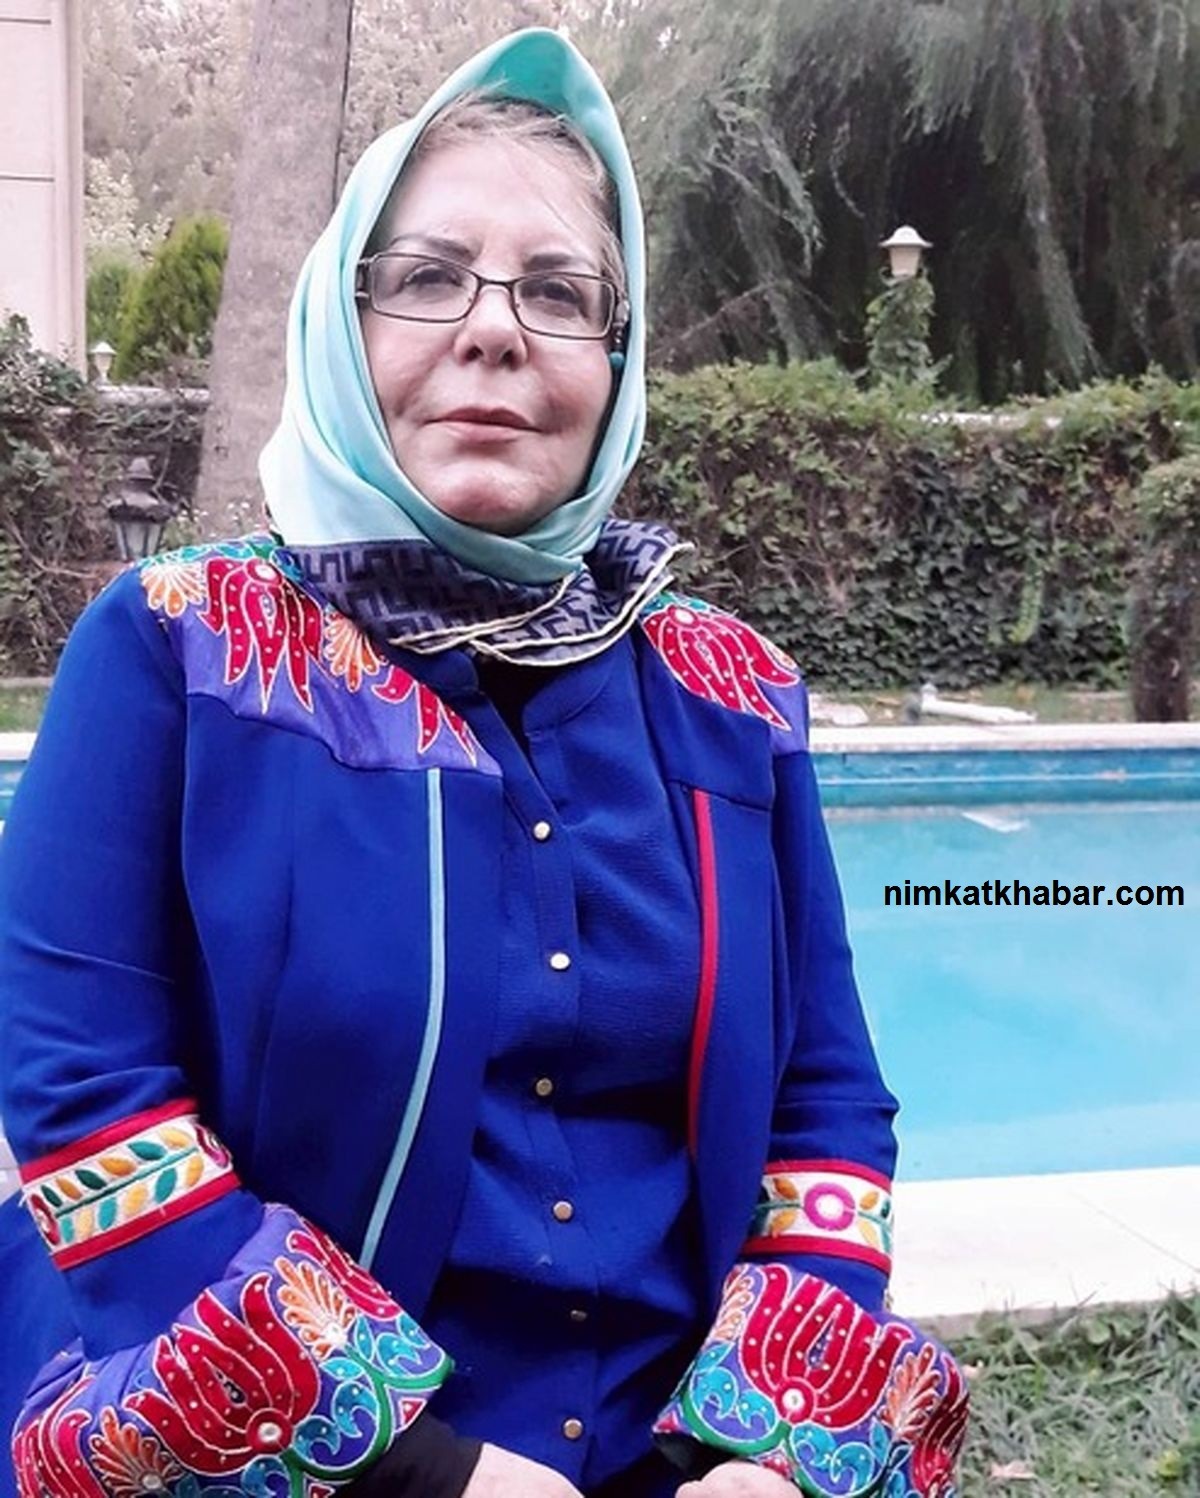 عکس و بیوگرافی پوراندخت مهیمن هنرپیشه سینما و تلویزیون ایران